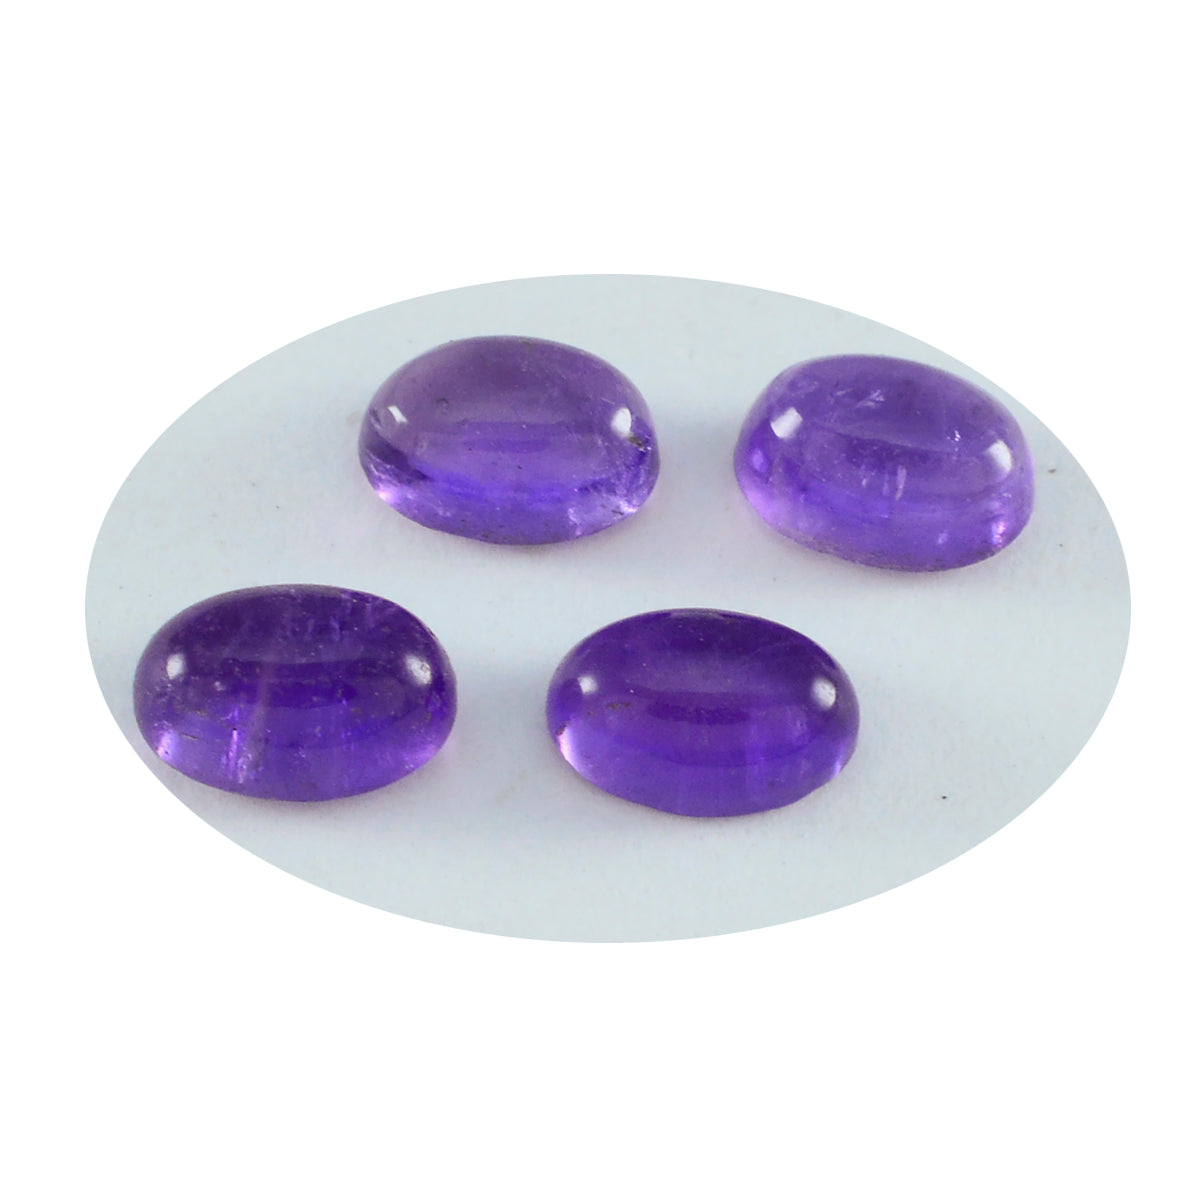 riyogems 1 шт. фиолетовый аметист кабошон 5x7 мм овальной формы, драгоценный камень хорошего качества